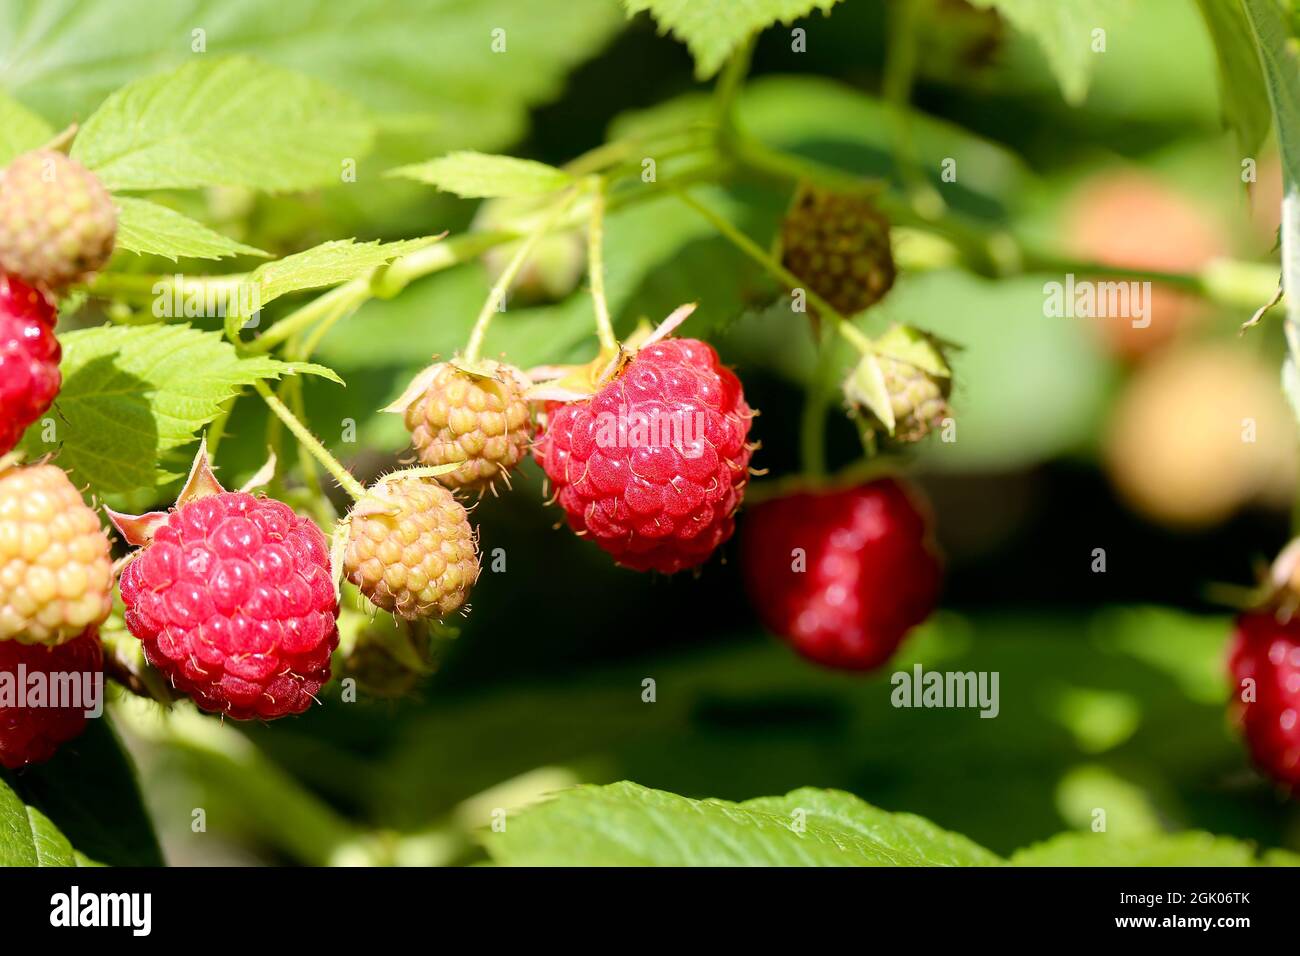 Himbeeren, branch of ripe raspberries in a garden Stock Photo